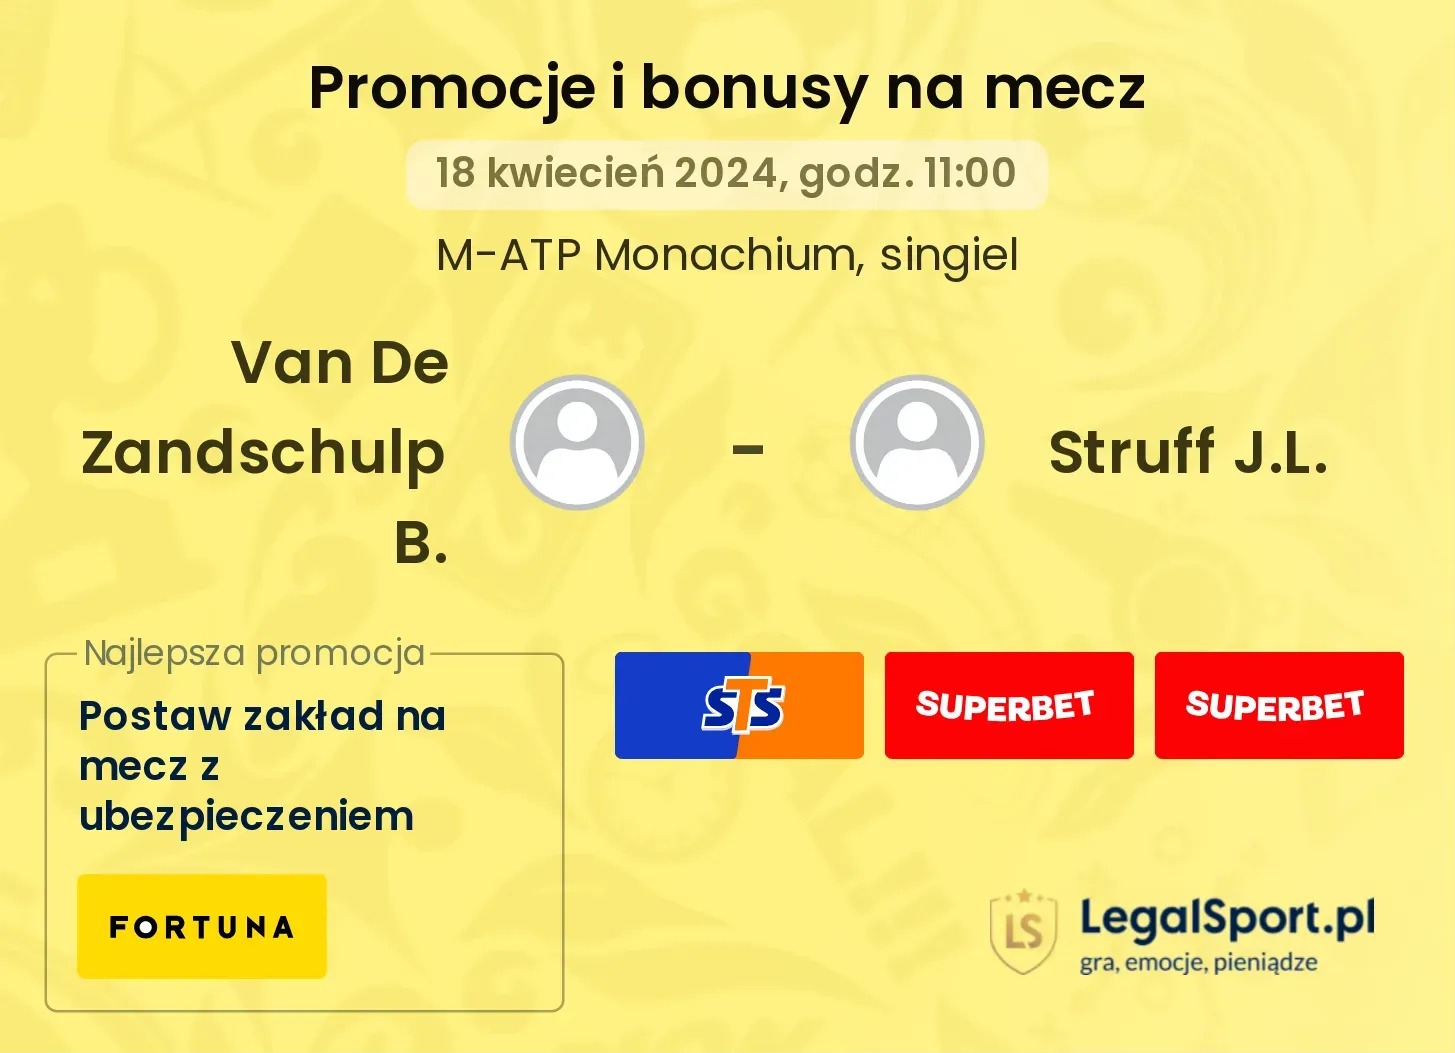 Van De Zandschulp B. - Struff J.L. promocje bonusy na mecz